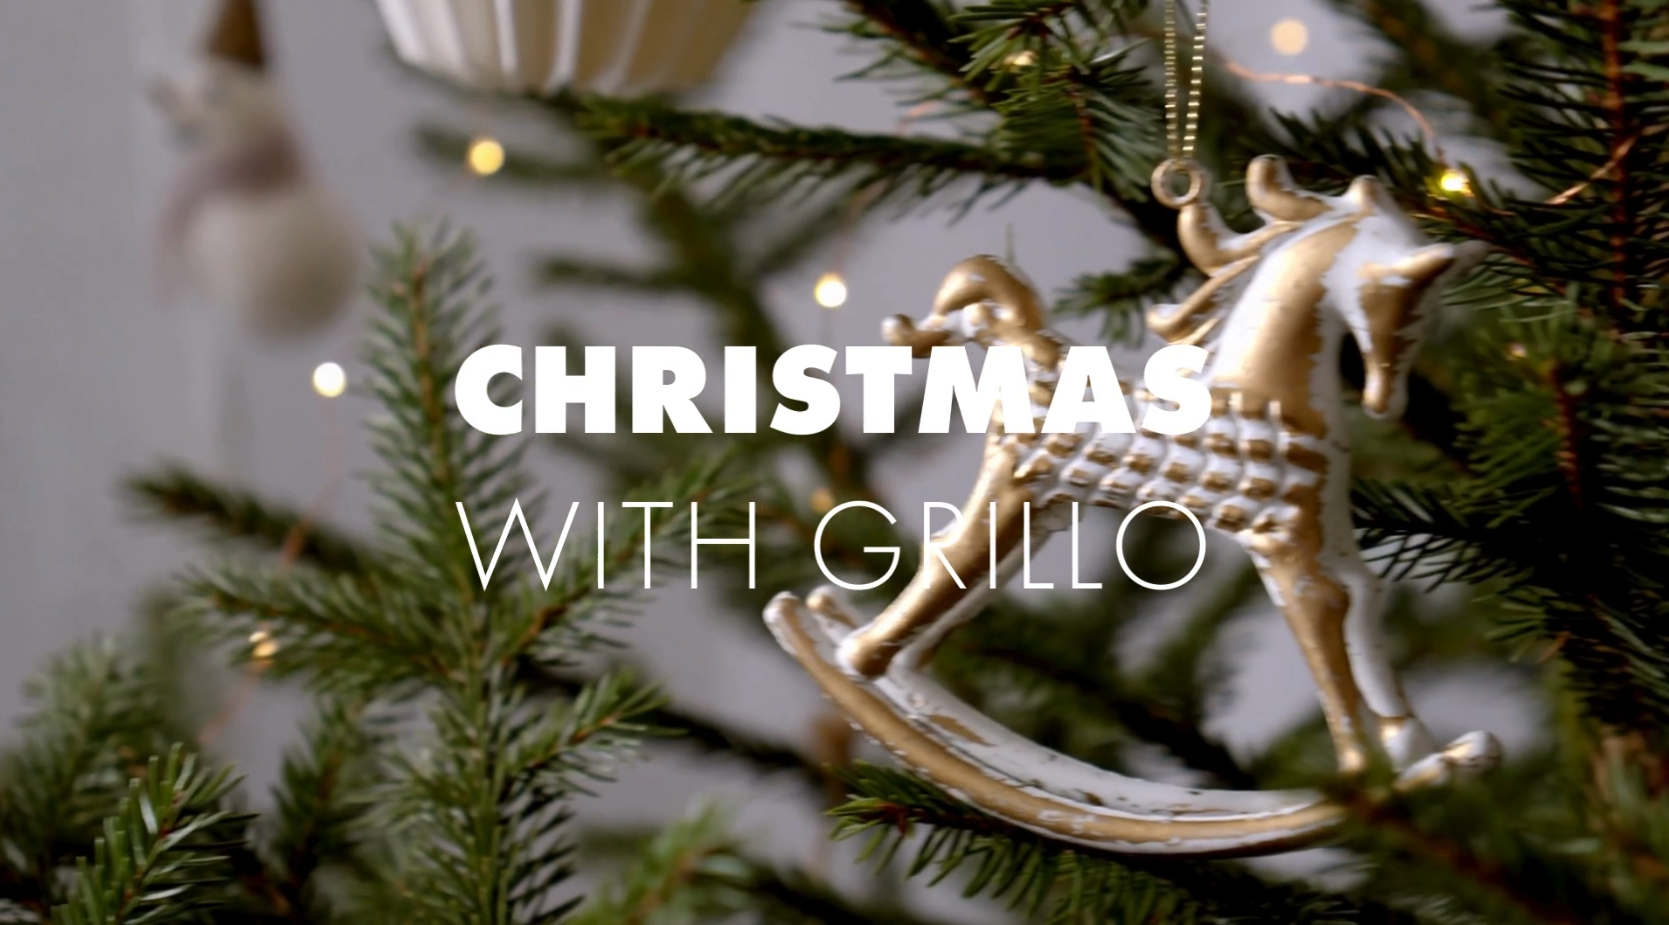 Weihnachten & GRILLO: Jetzt unser neues Weihnachtsvideo ansehen